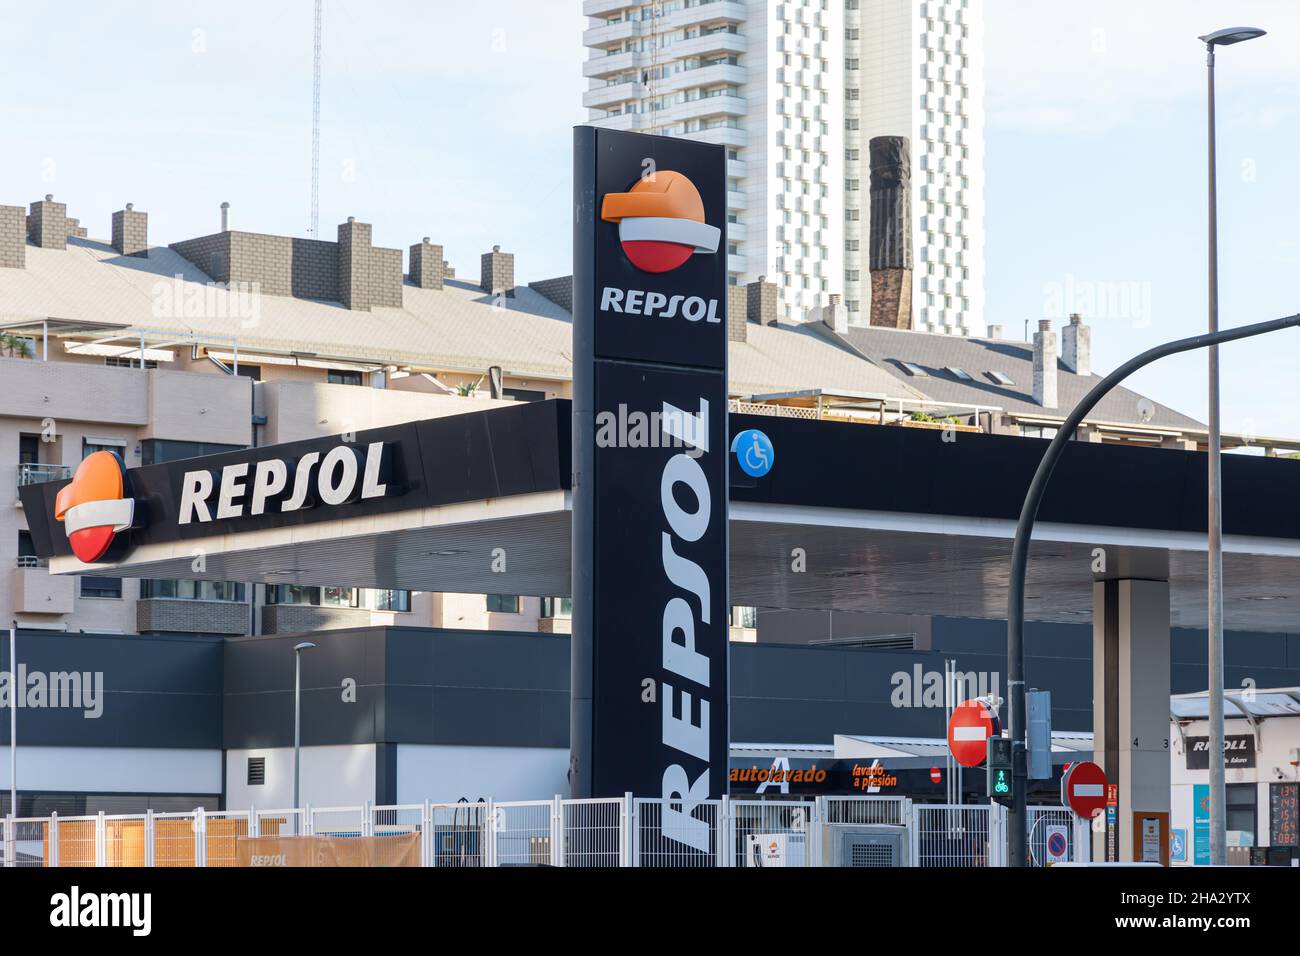 VALENCIA, SPANIEN - 09. DEZEMBER 2021: Repsol ist ein spanisches Energie- und Petrochemieunternehmen mit Sitz in Madrid Stockfoto